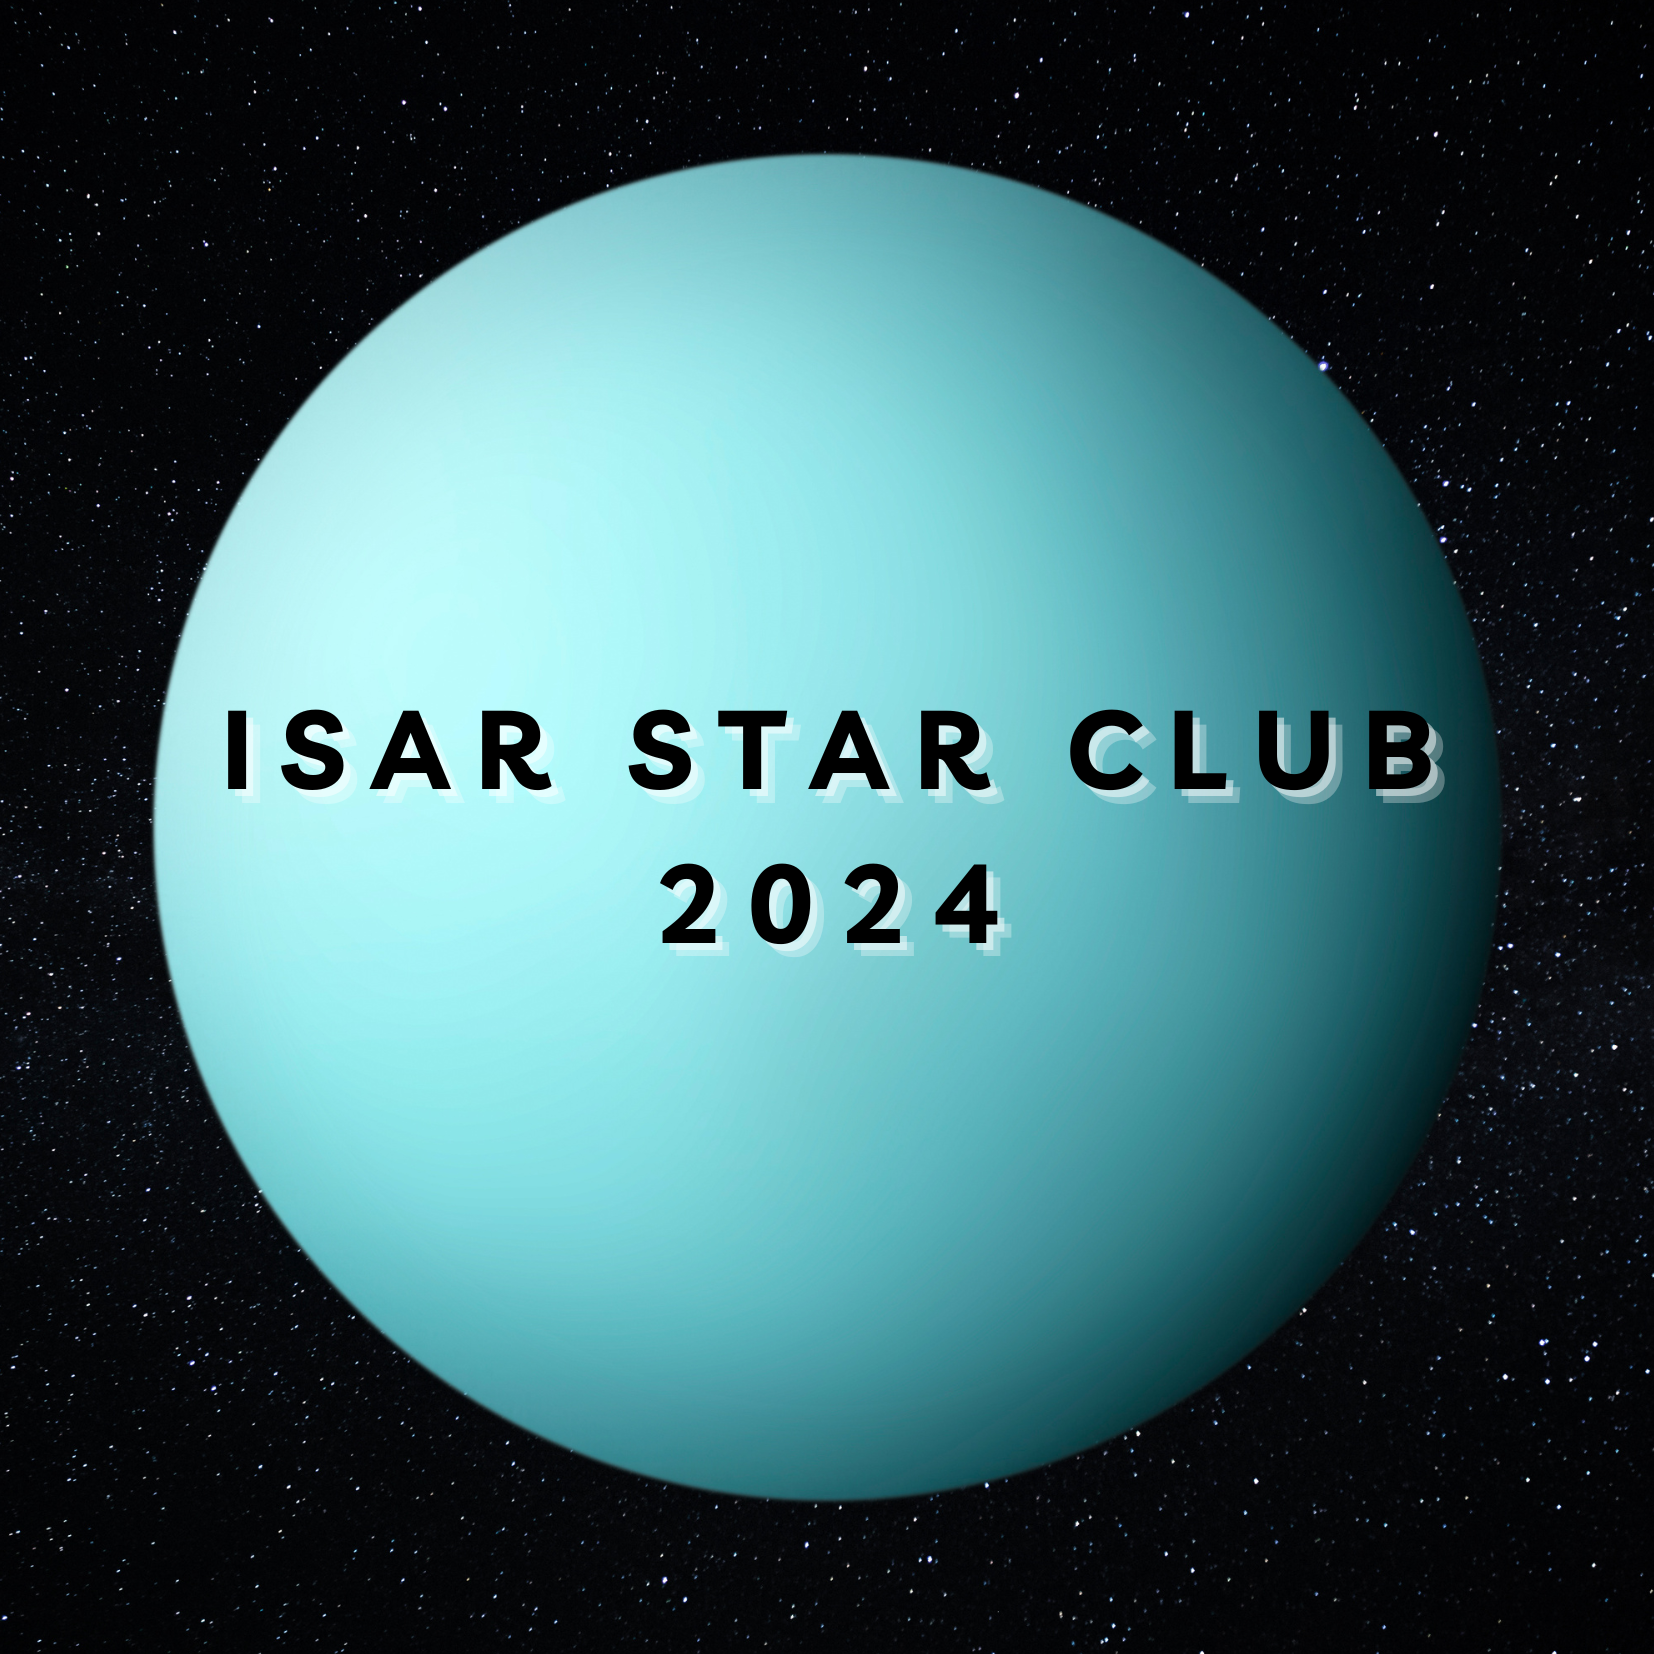 ISAR STAR CLUB 2024